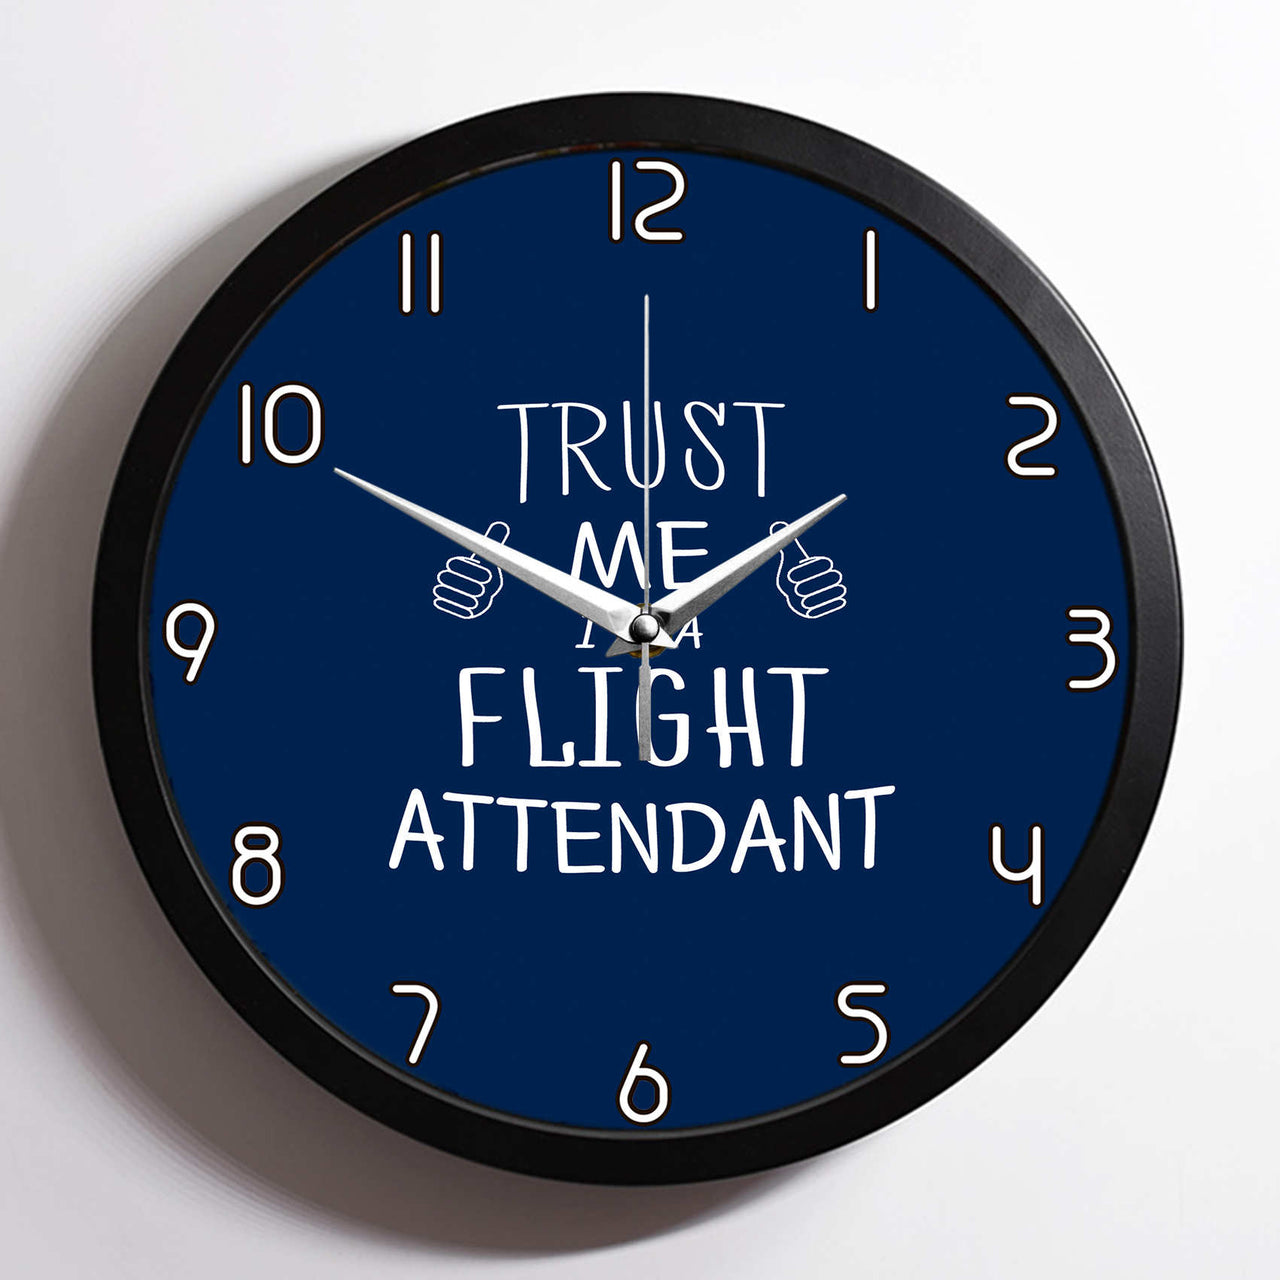 Trust Me I'm a Flight Attendant Designed Wall Clocks